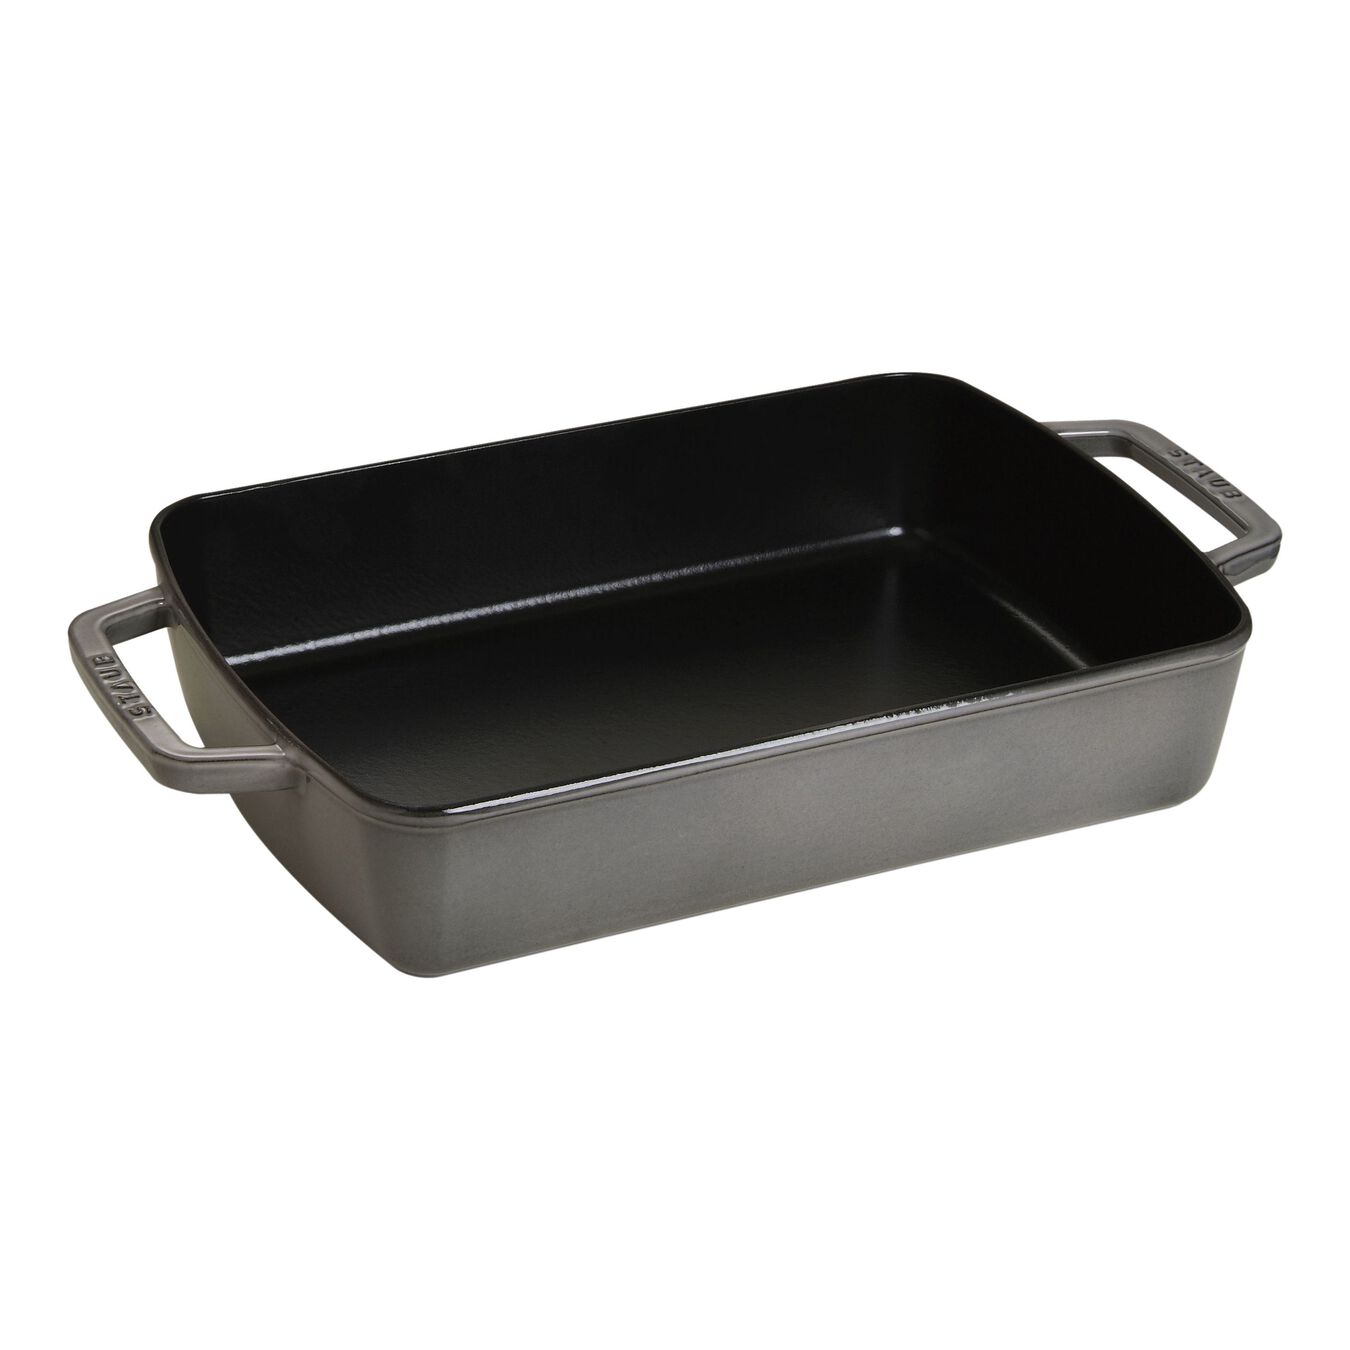 12-x 8-inch, rectangular, Roasting Pan, graphite grey,,large 1